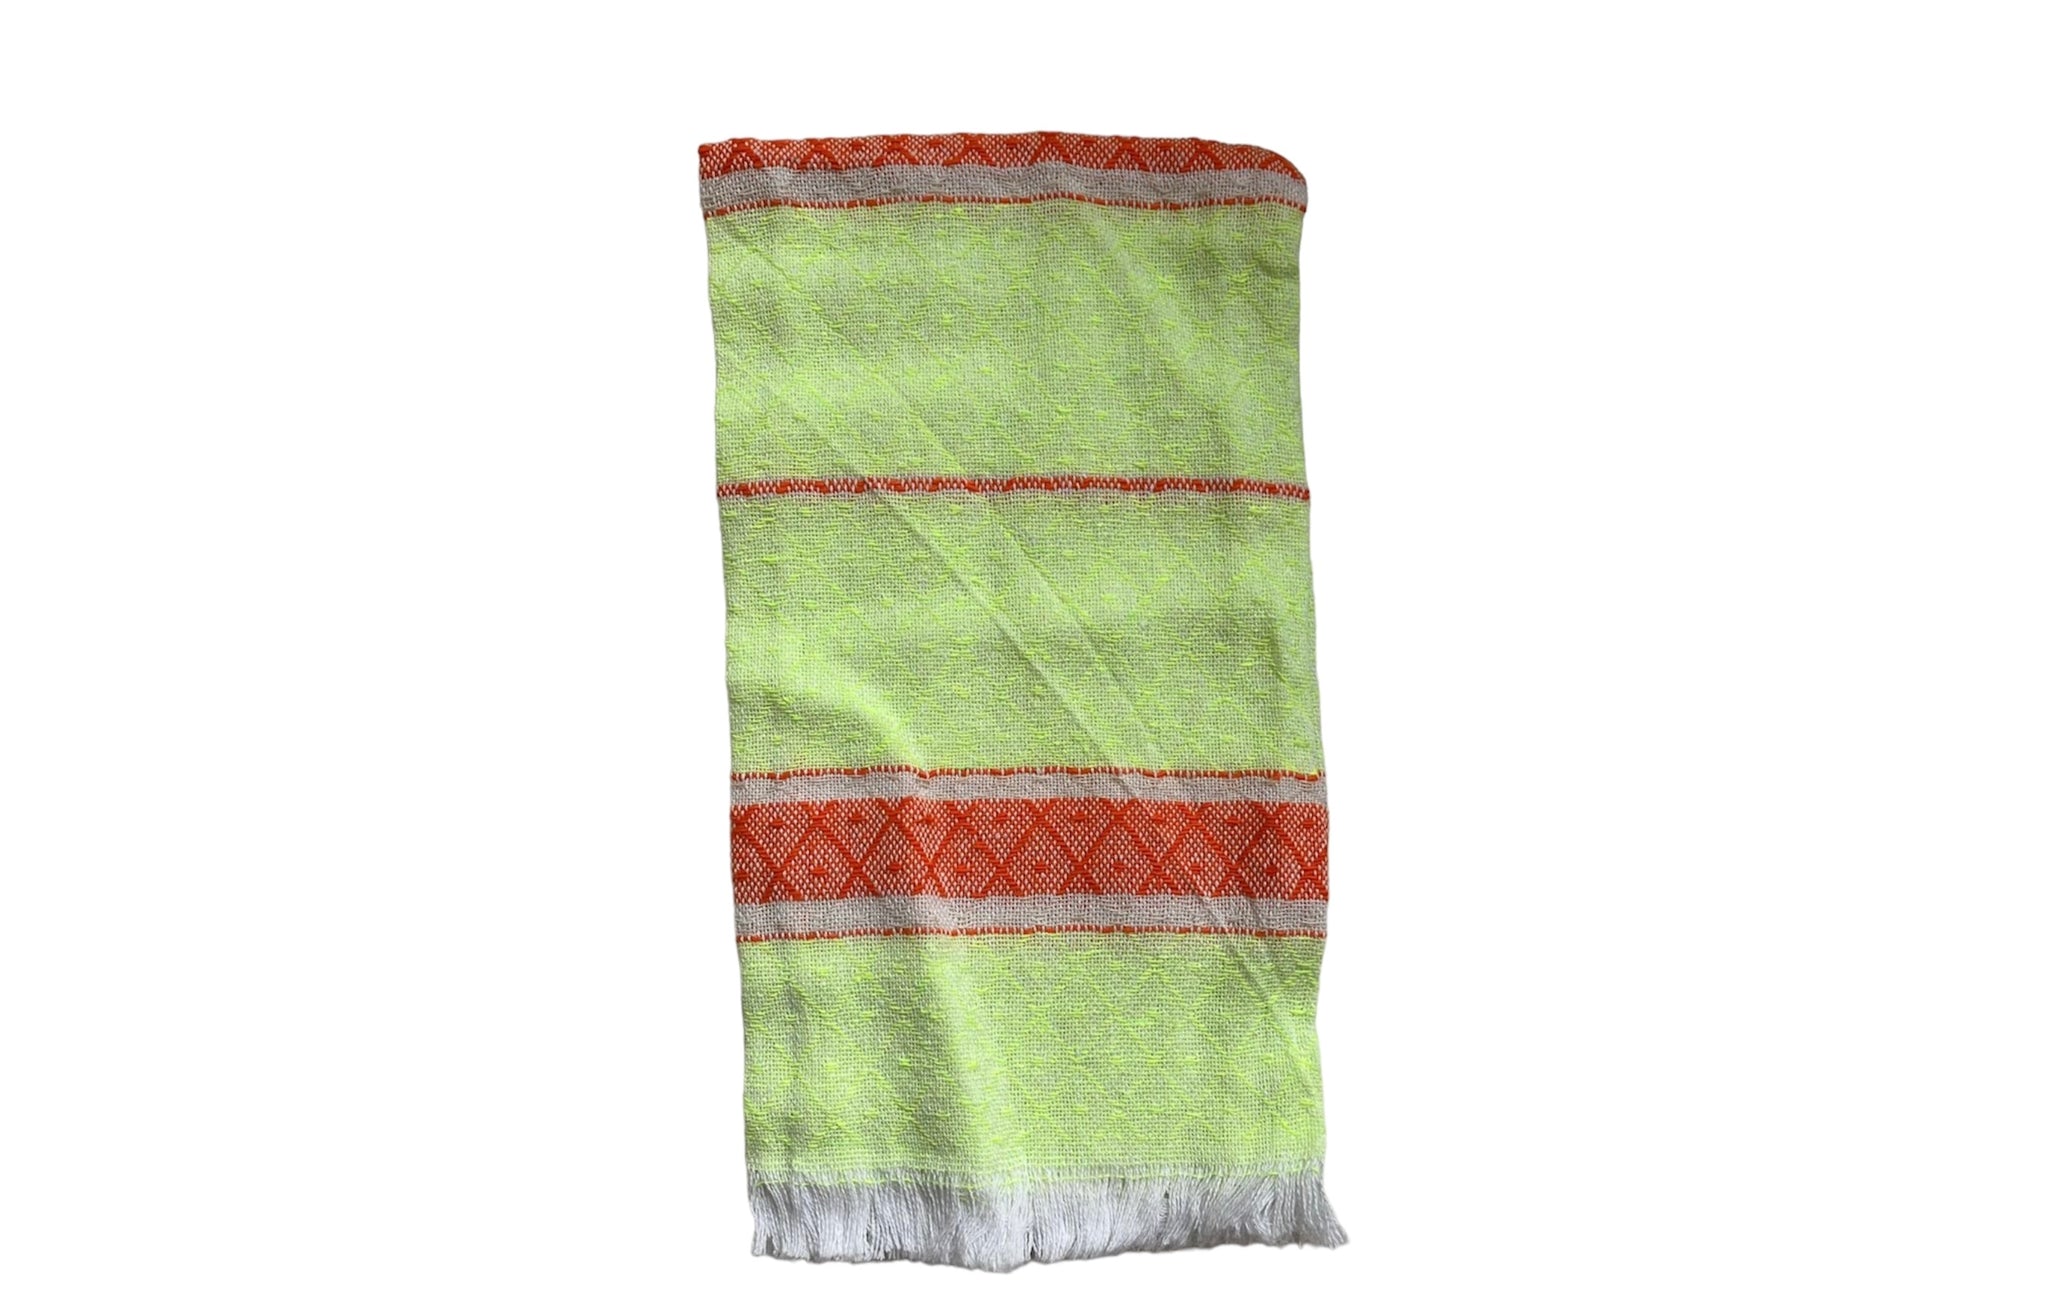 Medium Mexican Towel 24 x 19 in | Turkish Towel